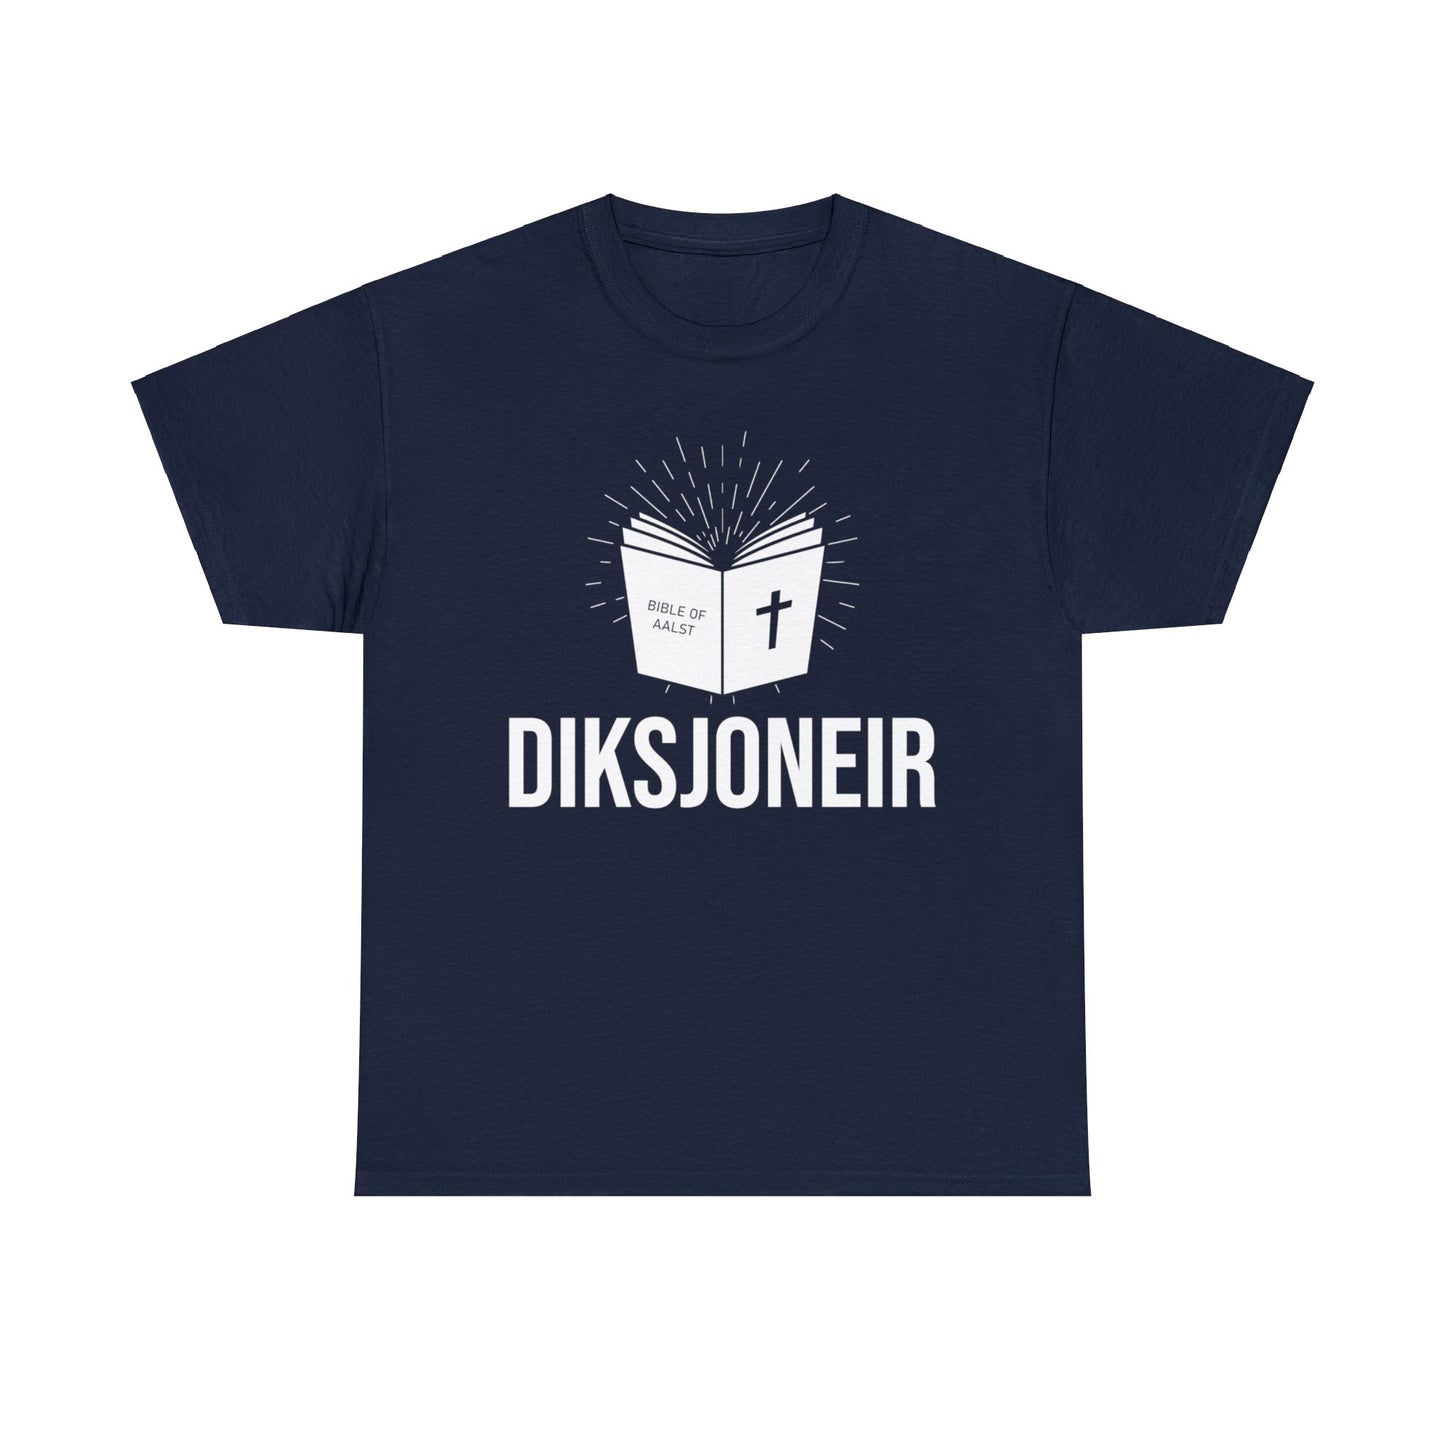 Int Oilsjters - Tshirt - Diksjoneir